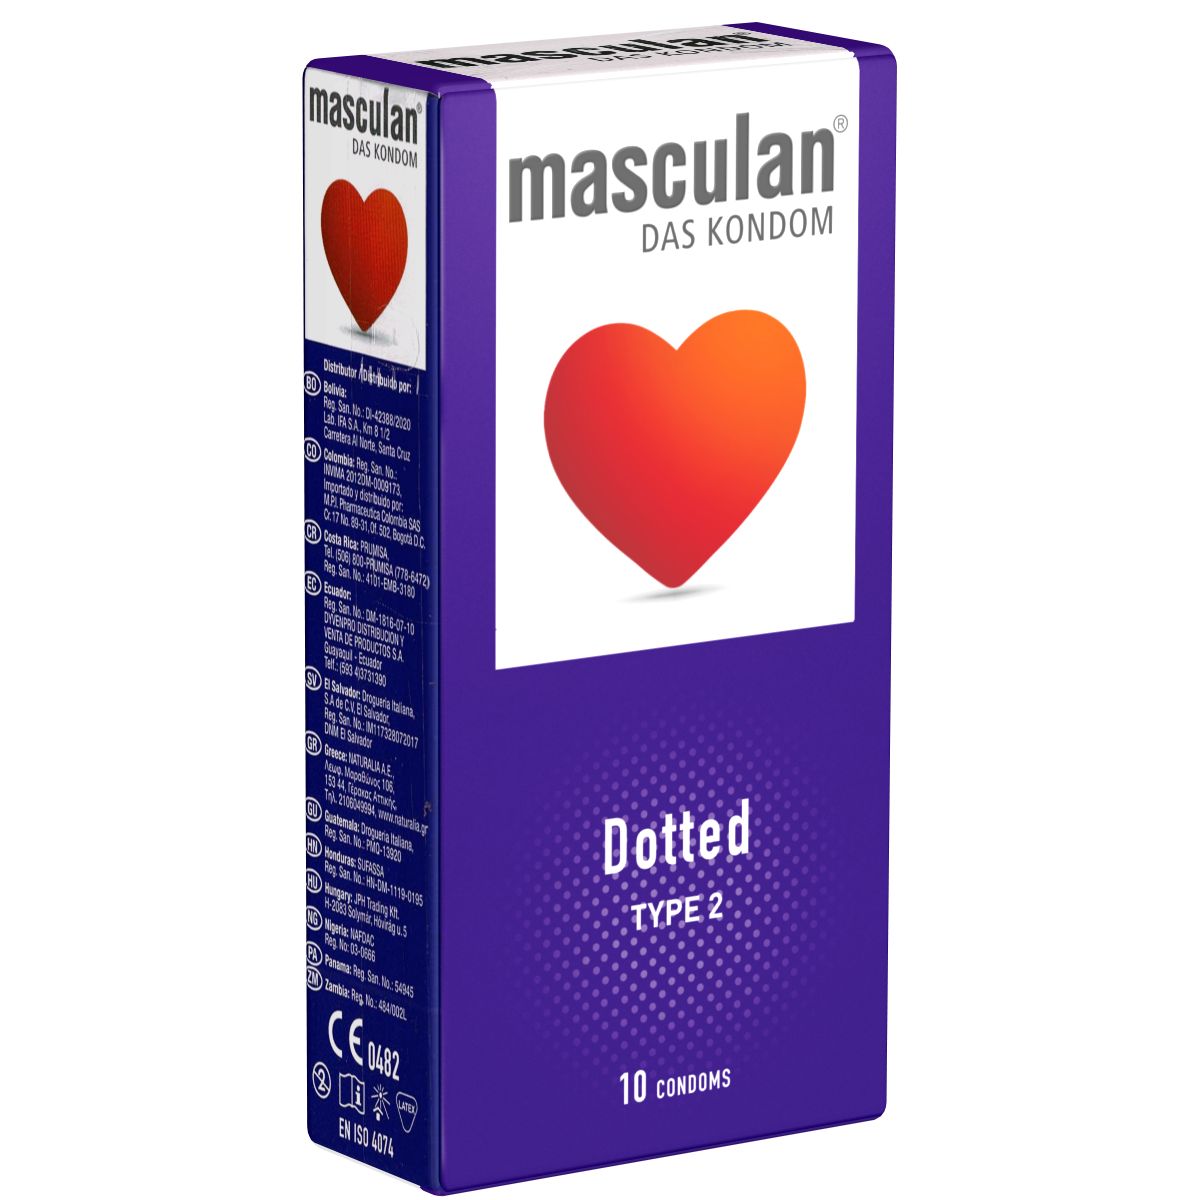 Masculan *Typ 2* (dotted) genoppte Kondome für mehr Gefühl